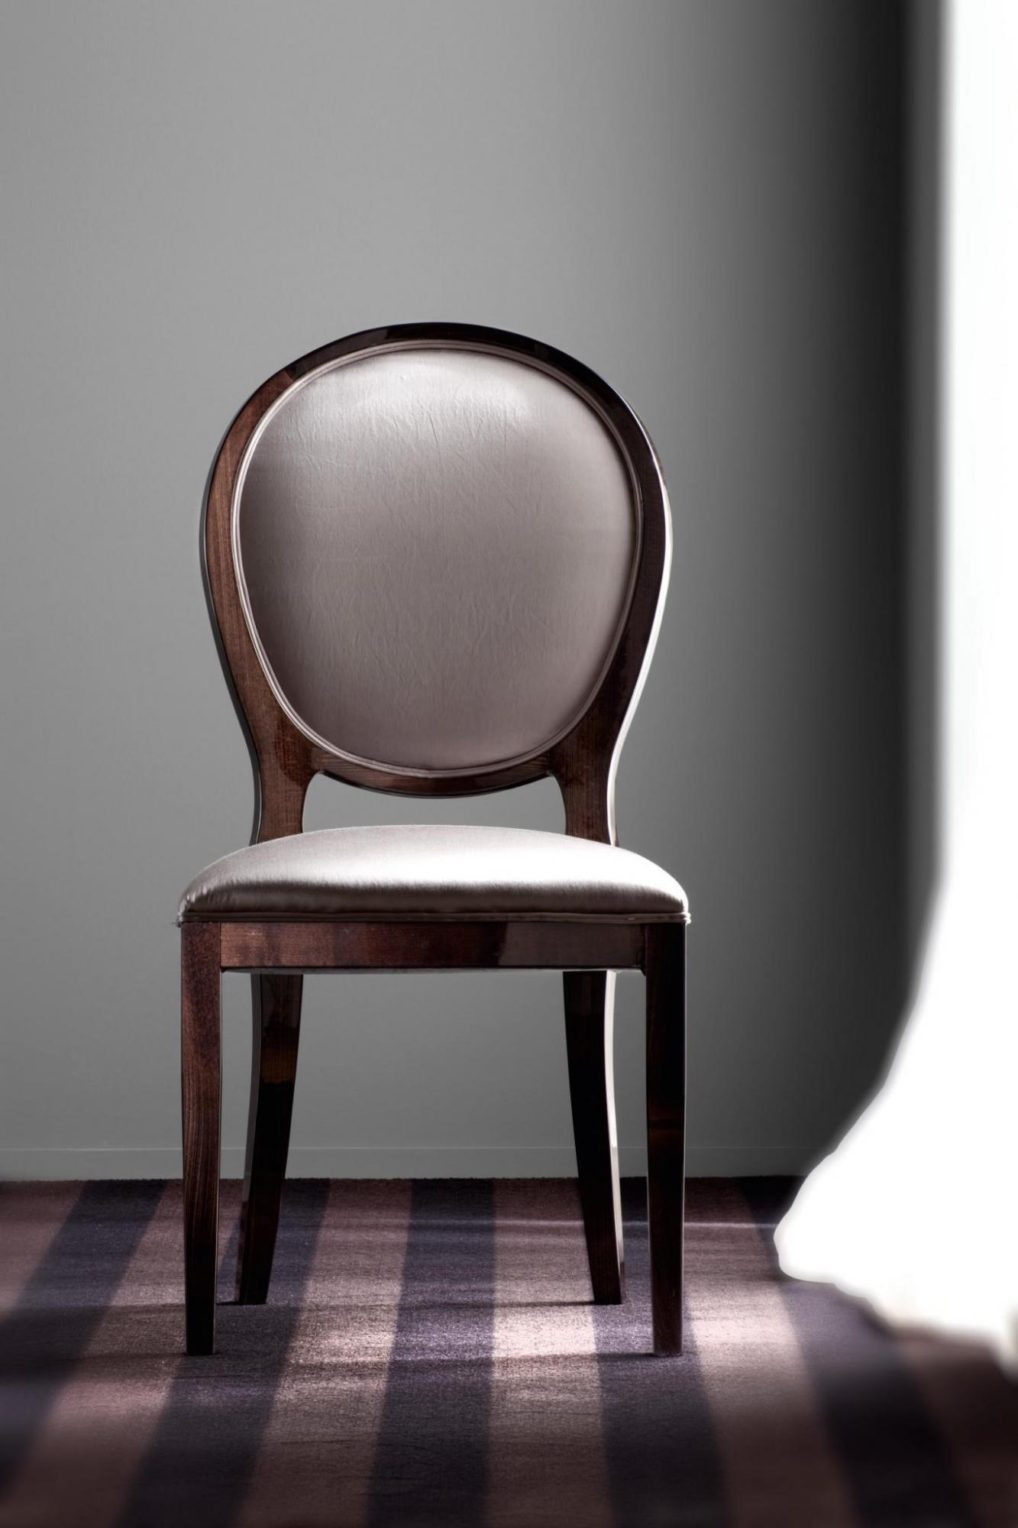 意大利家具costantinipietro的chairs-Sussex2 餐椅 主图